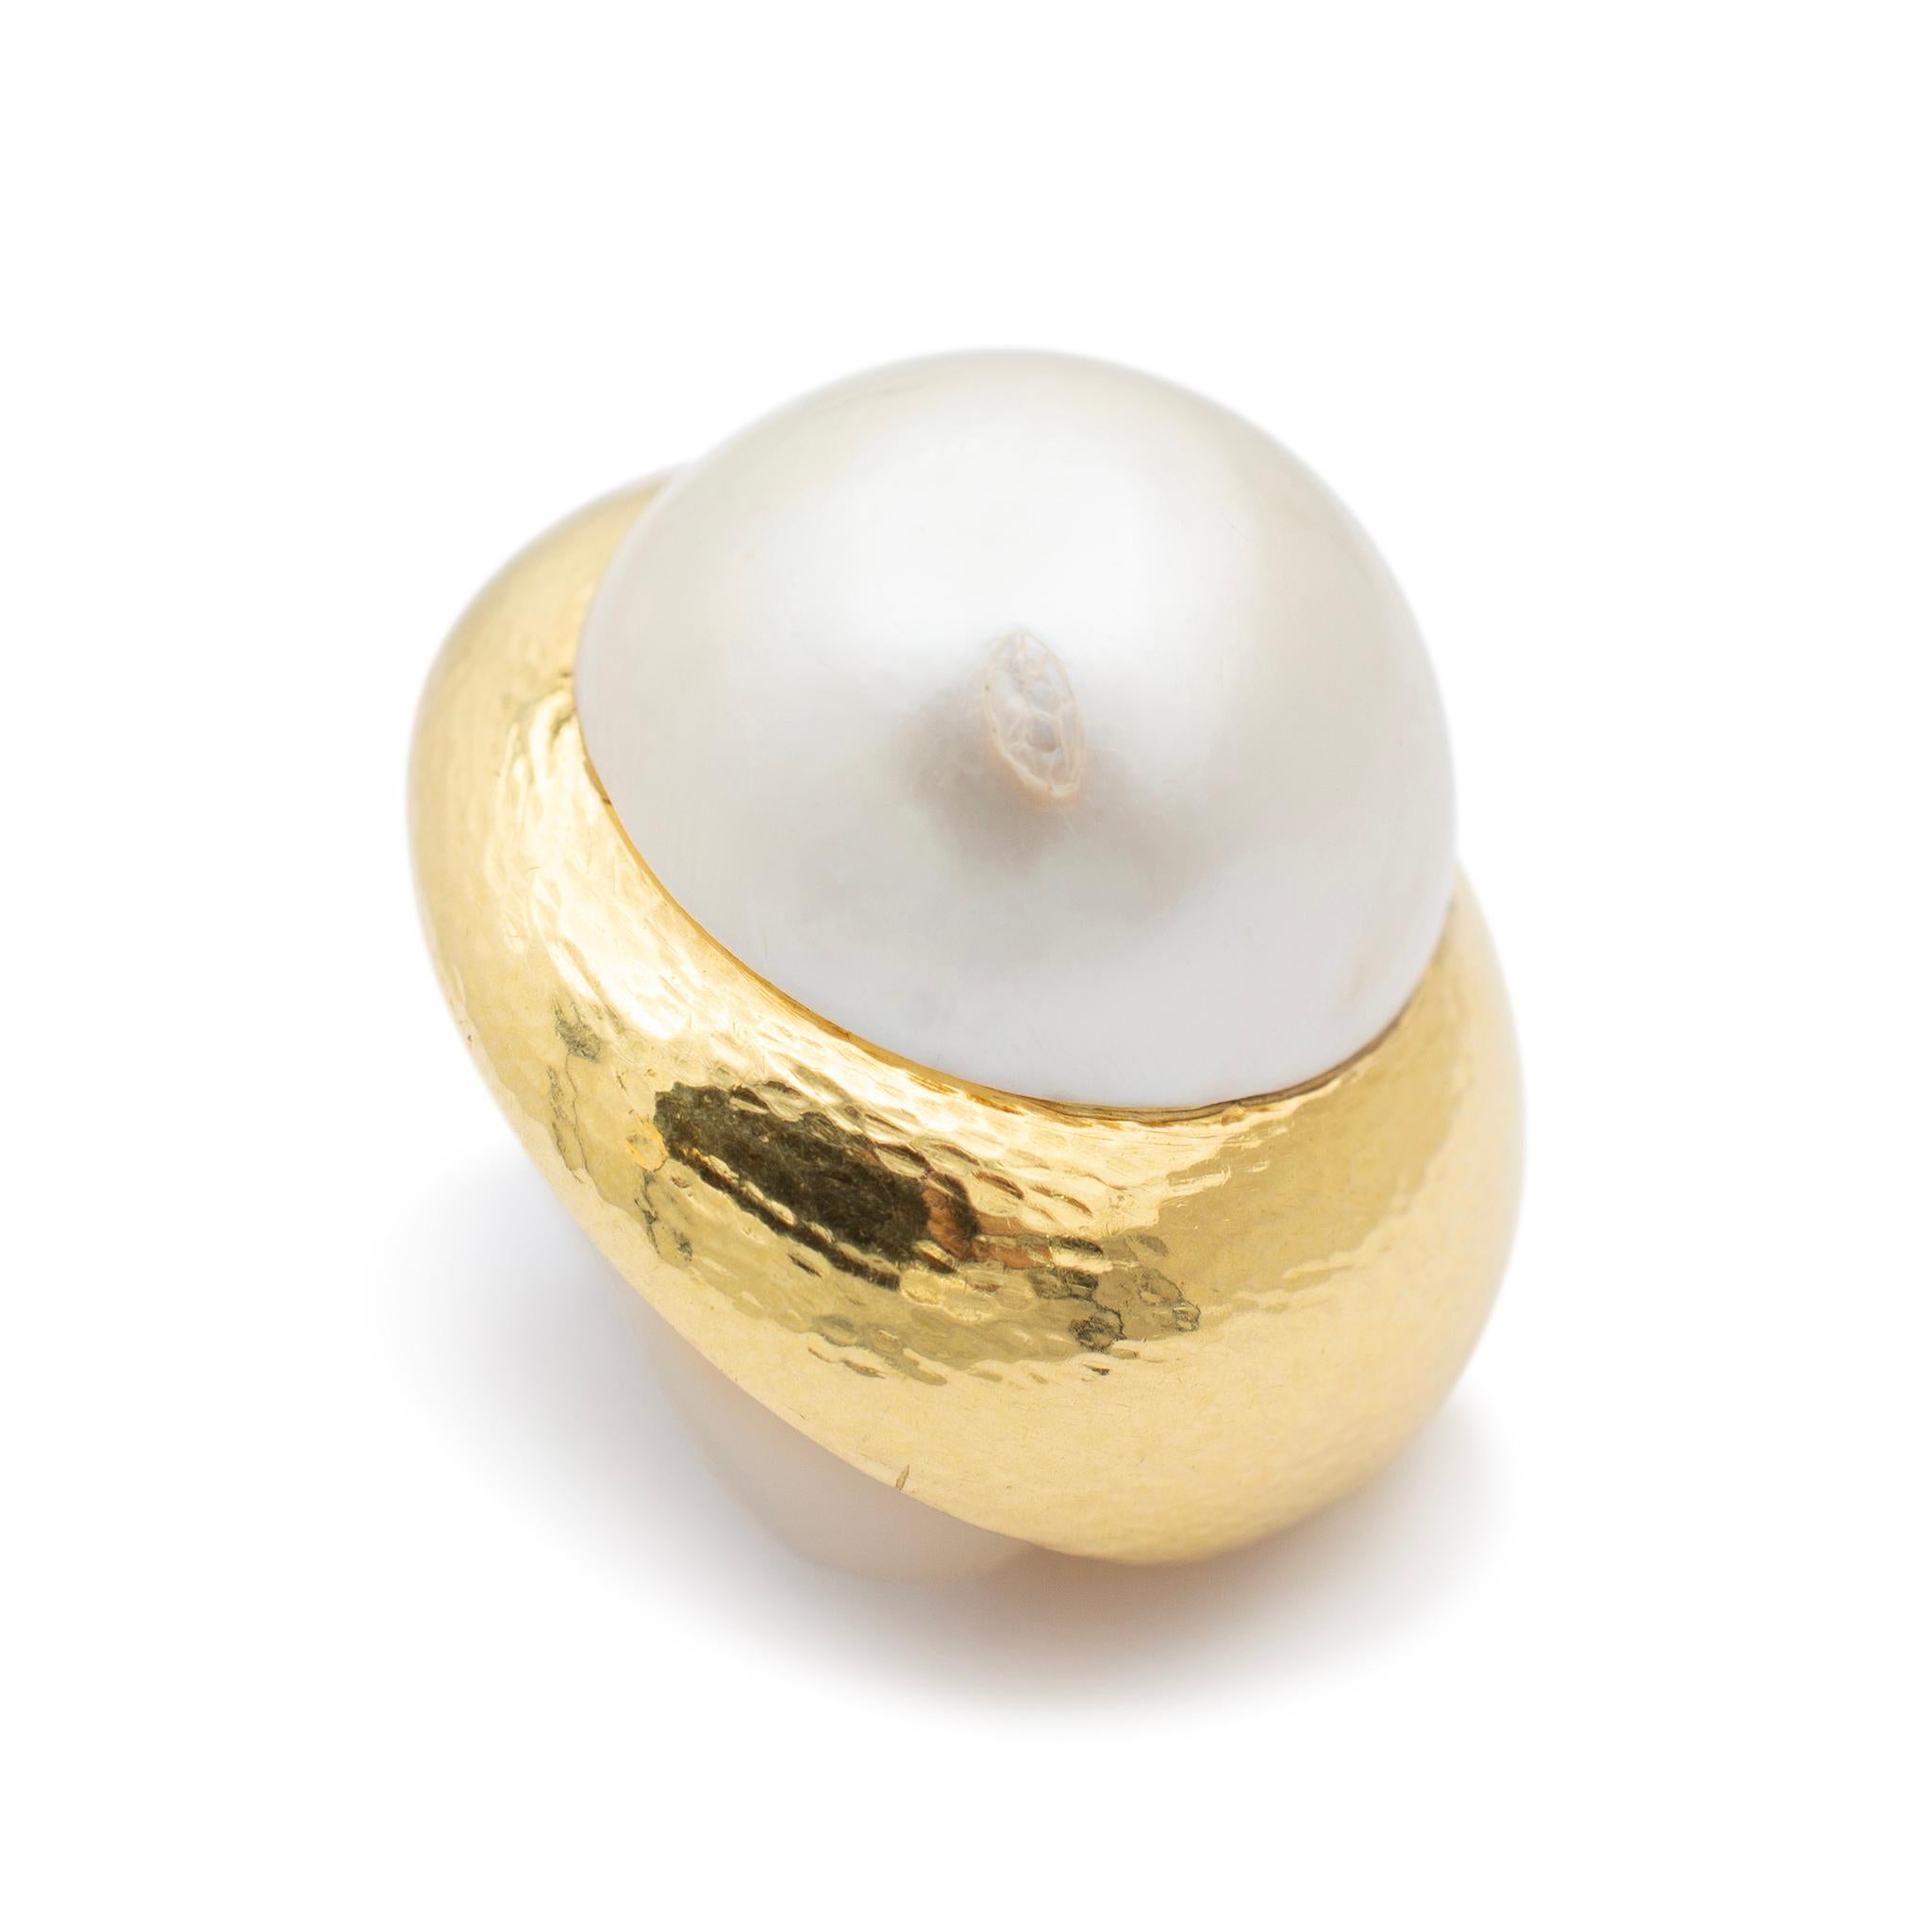 Marque : David Webb

Genre : Mesdames

Type de métal : Or jaune et blanc 18K

Diamètre : 1,00 pouce

Poids : 40,41 grammes

Boucles d'oreilles à clip en or blanc et jaune 18 carats pour dames avec perles. Gravé 